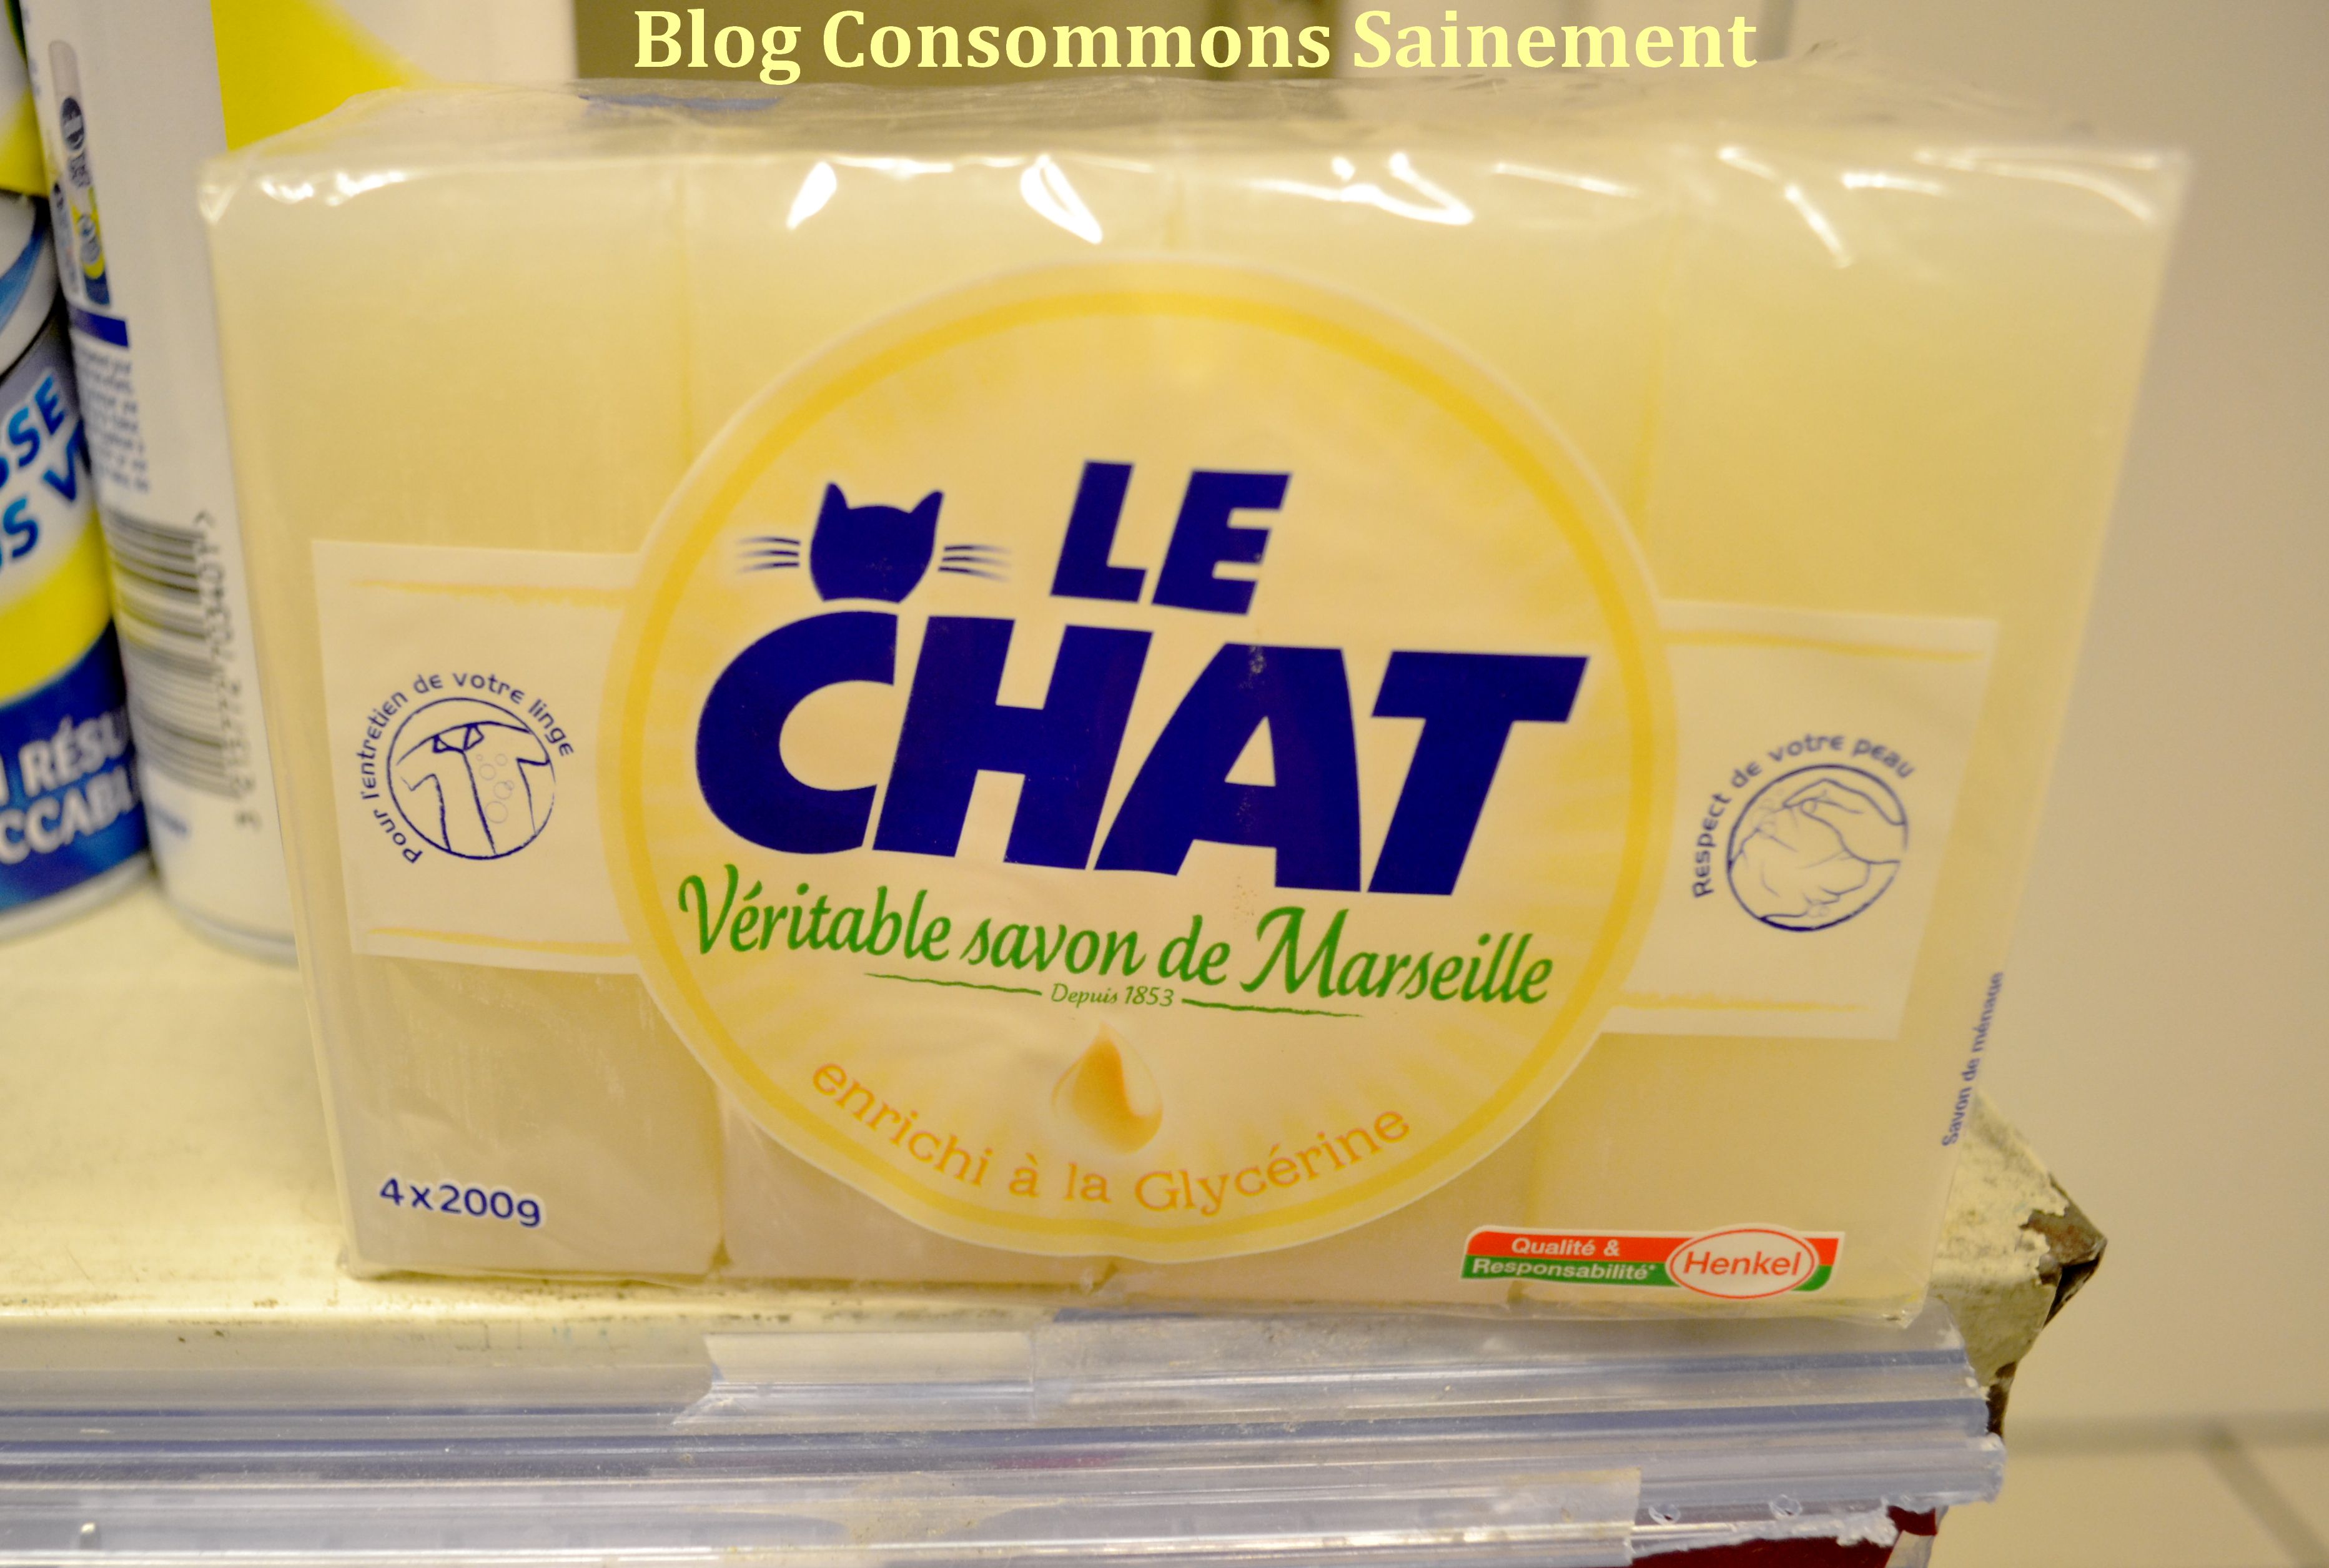 Comment bien choisir son savon de Marseille ? – Consommons sainement